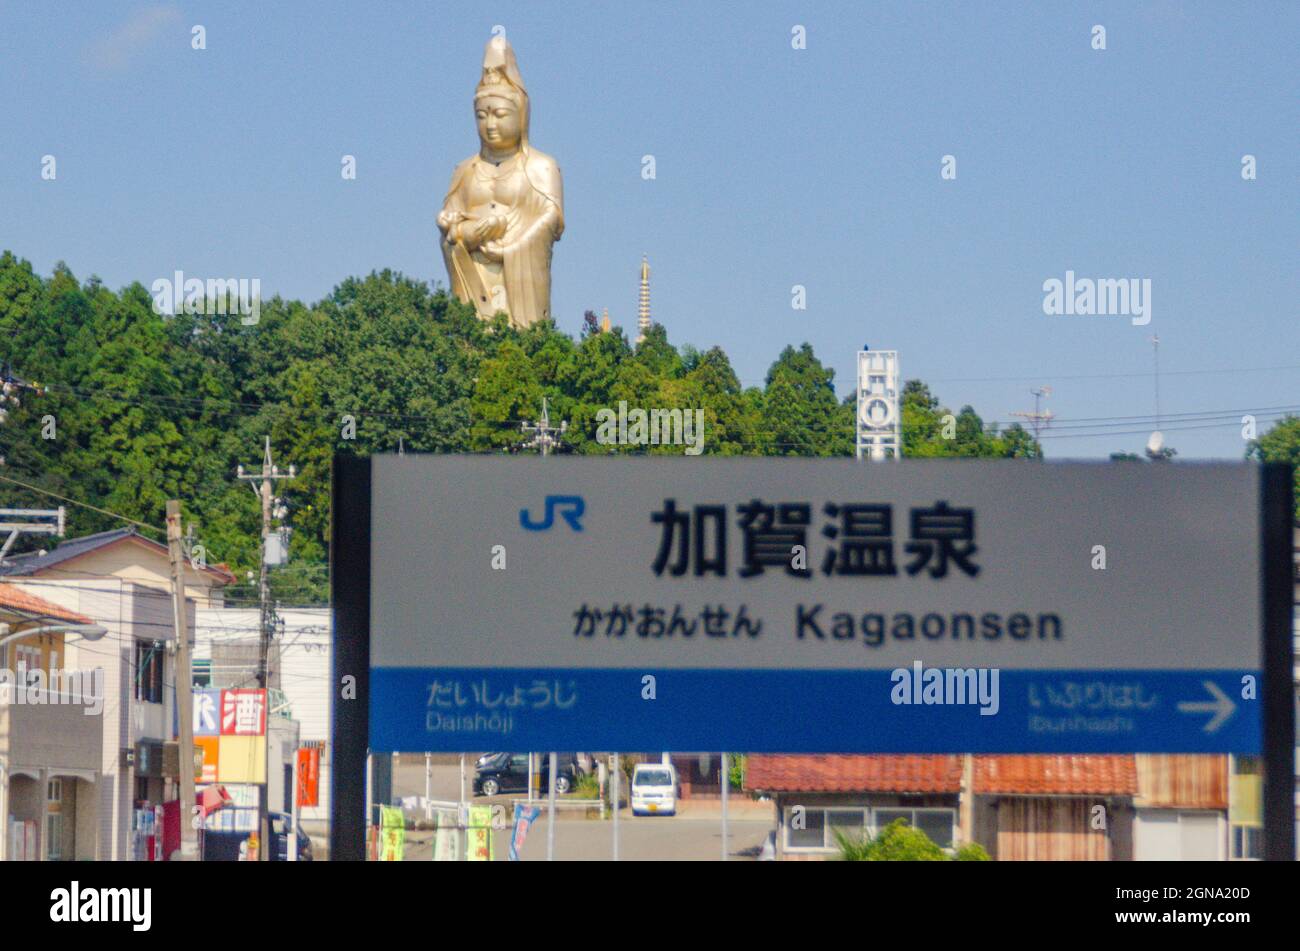 Jibo Kannon, Statue, Tall, Kaga-onsen, Japan, Railway station, Landmark, Iconic Stock Photo